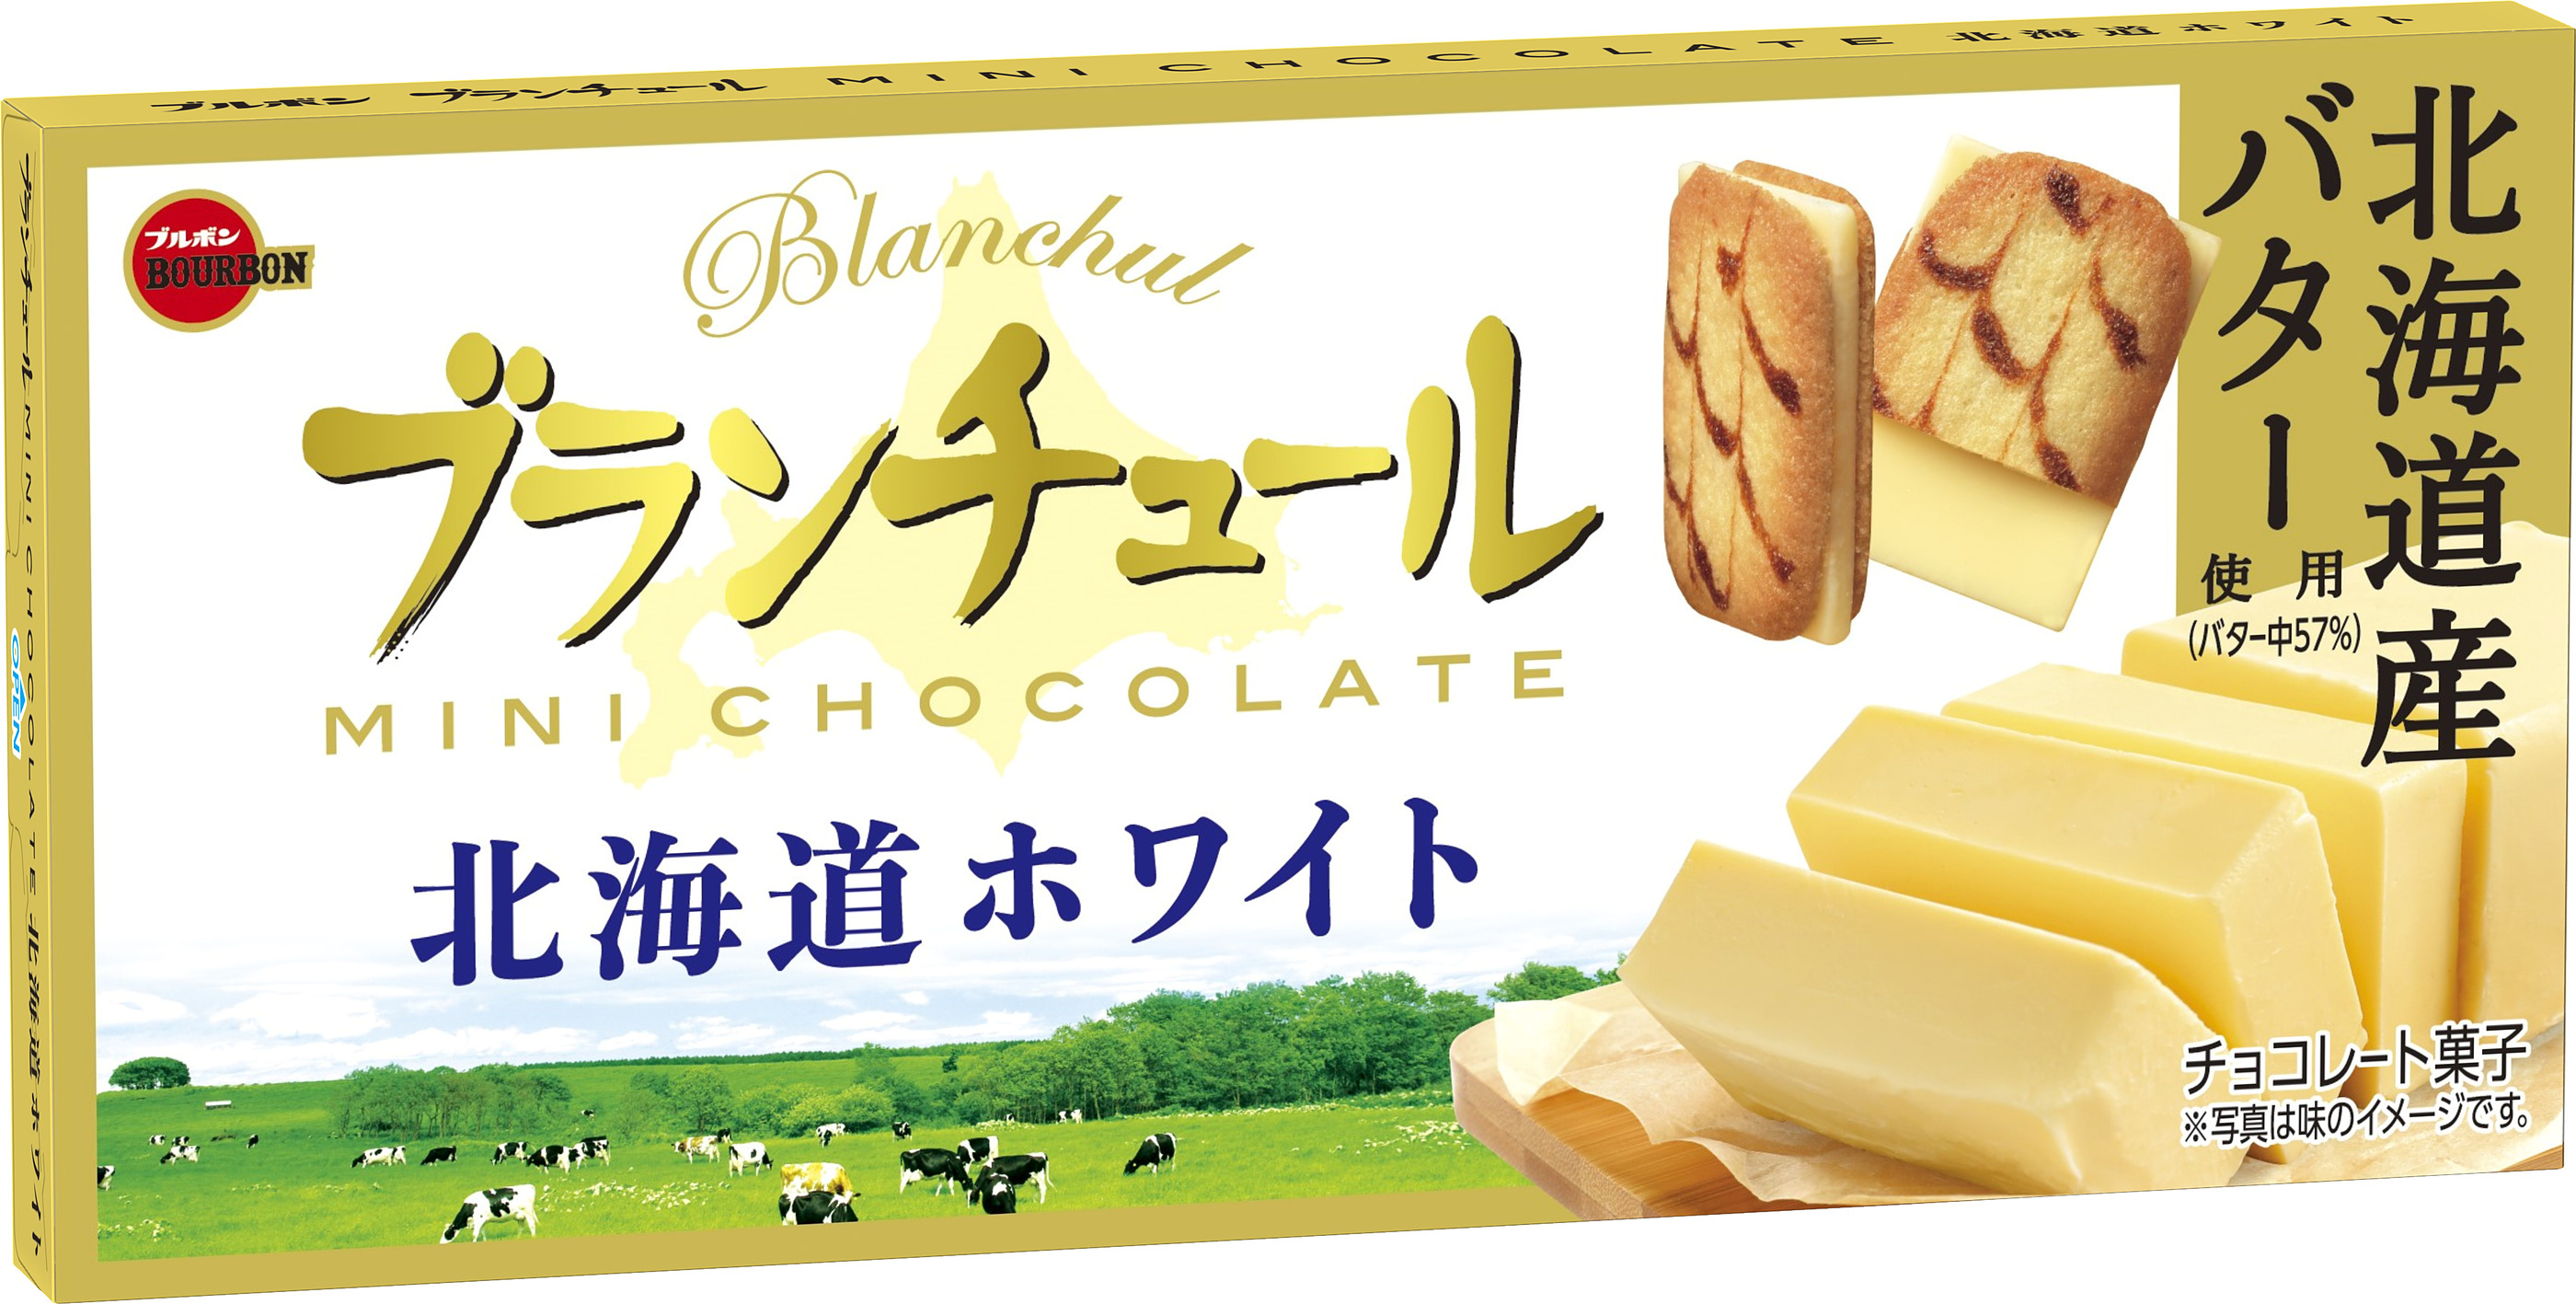 ブランチュールミニチョコレート北海道ホワイト(2)